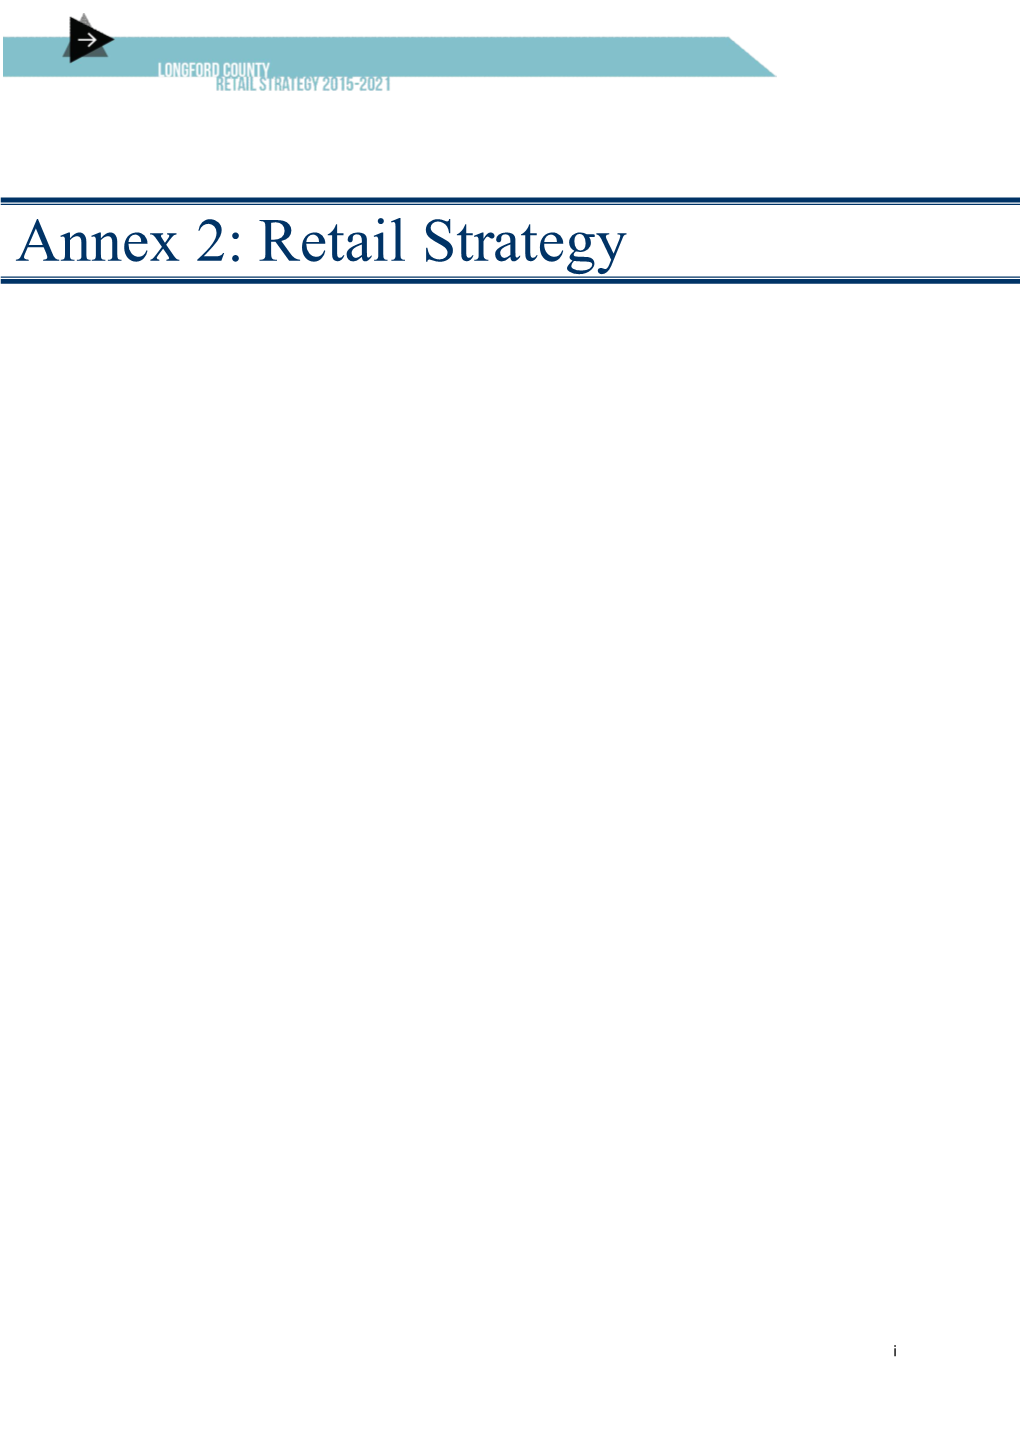 Annex 2: Retail Strategy